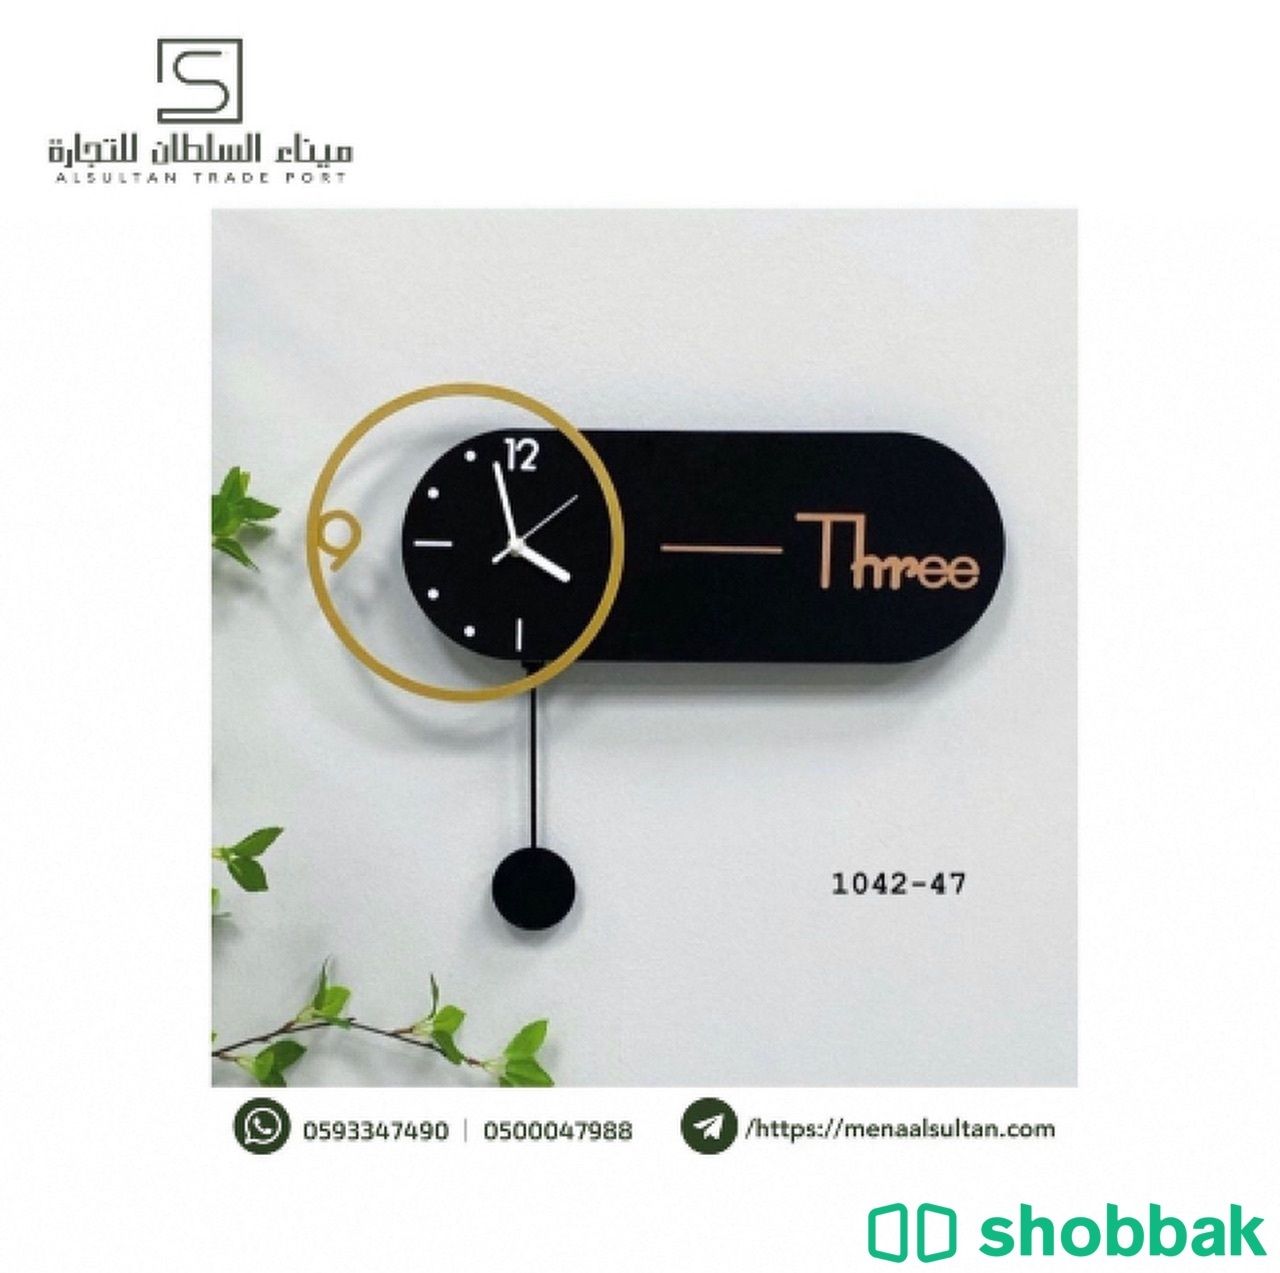 ساعة جدارية حديد اسود و ذهبي Shobbak Saudi Arabia